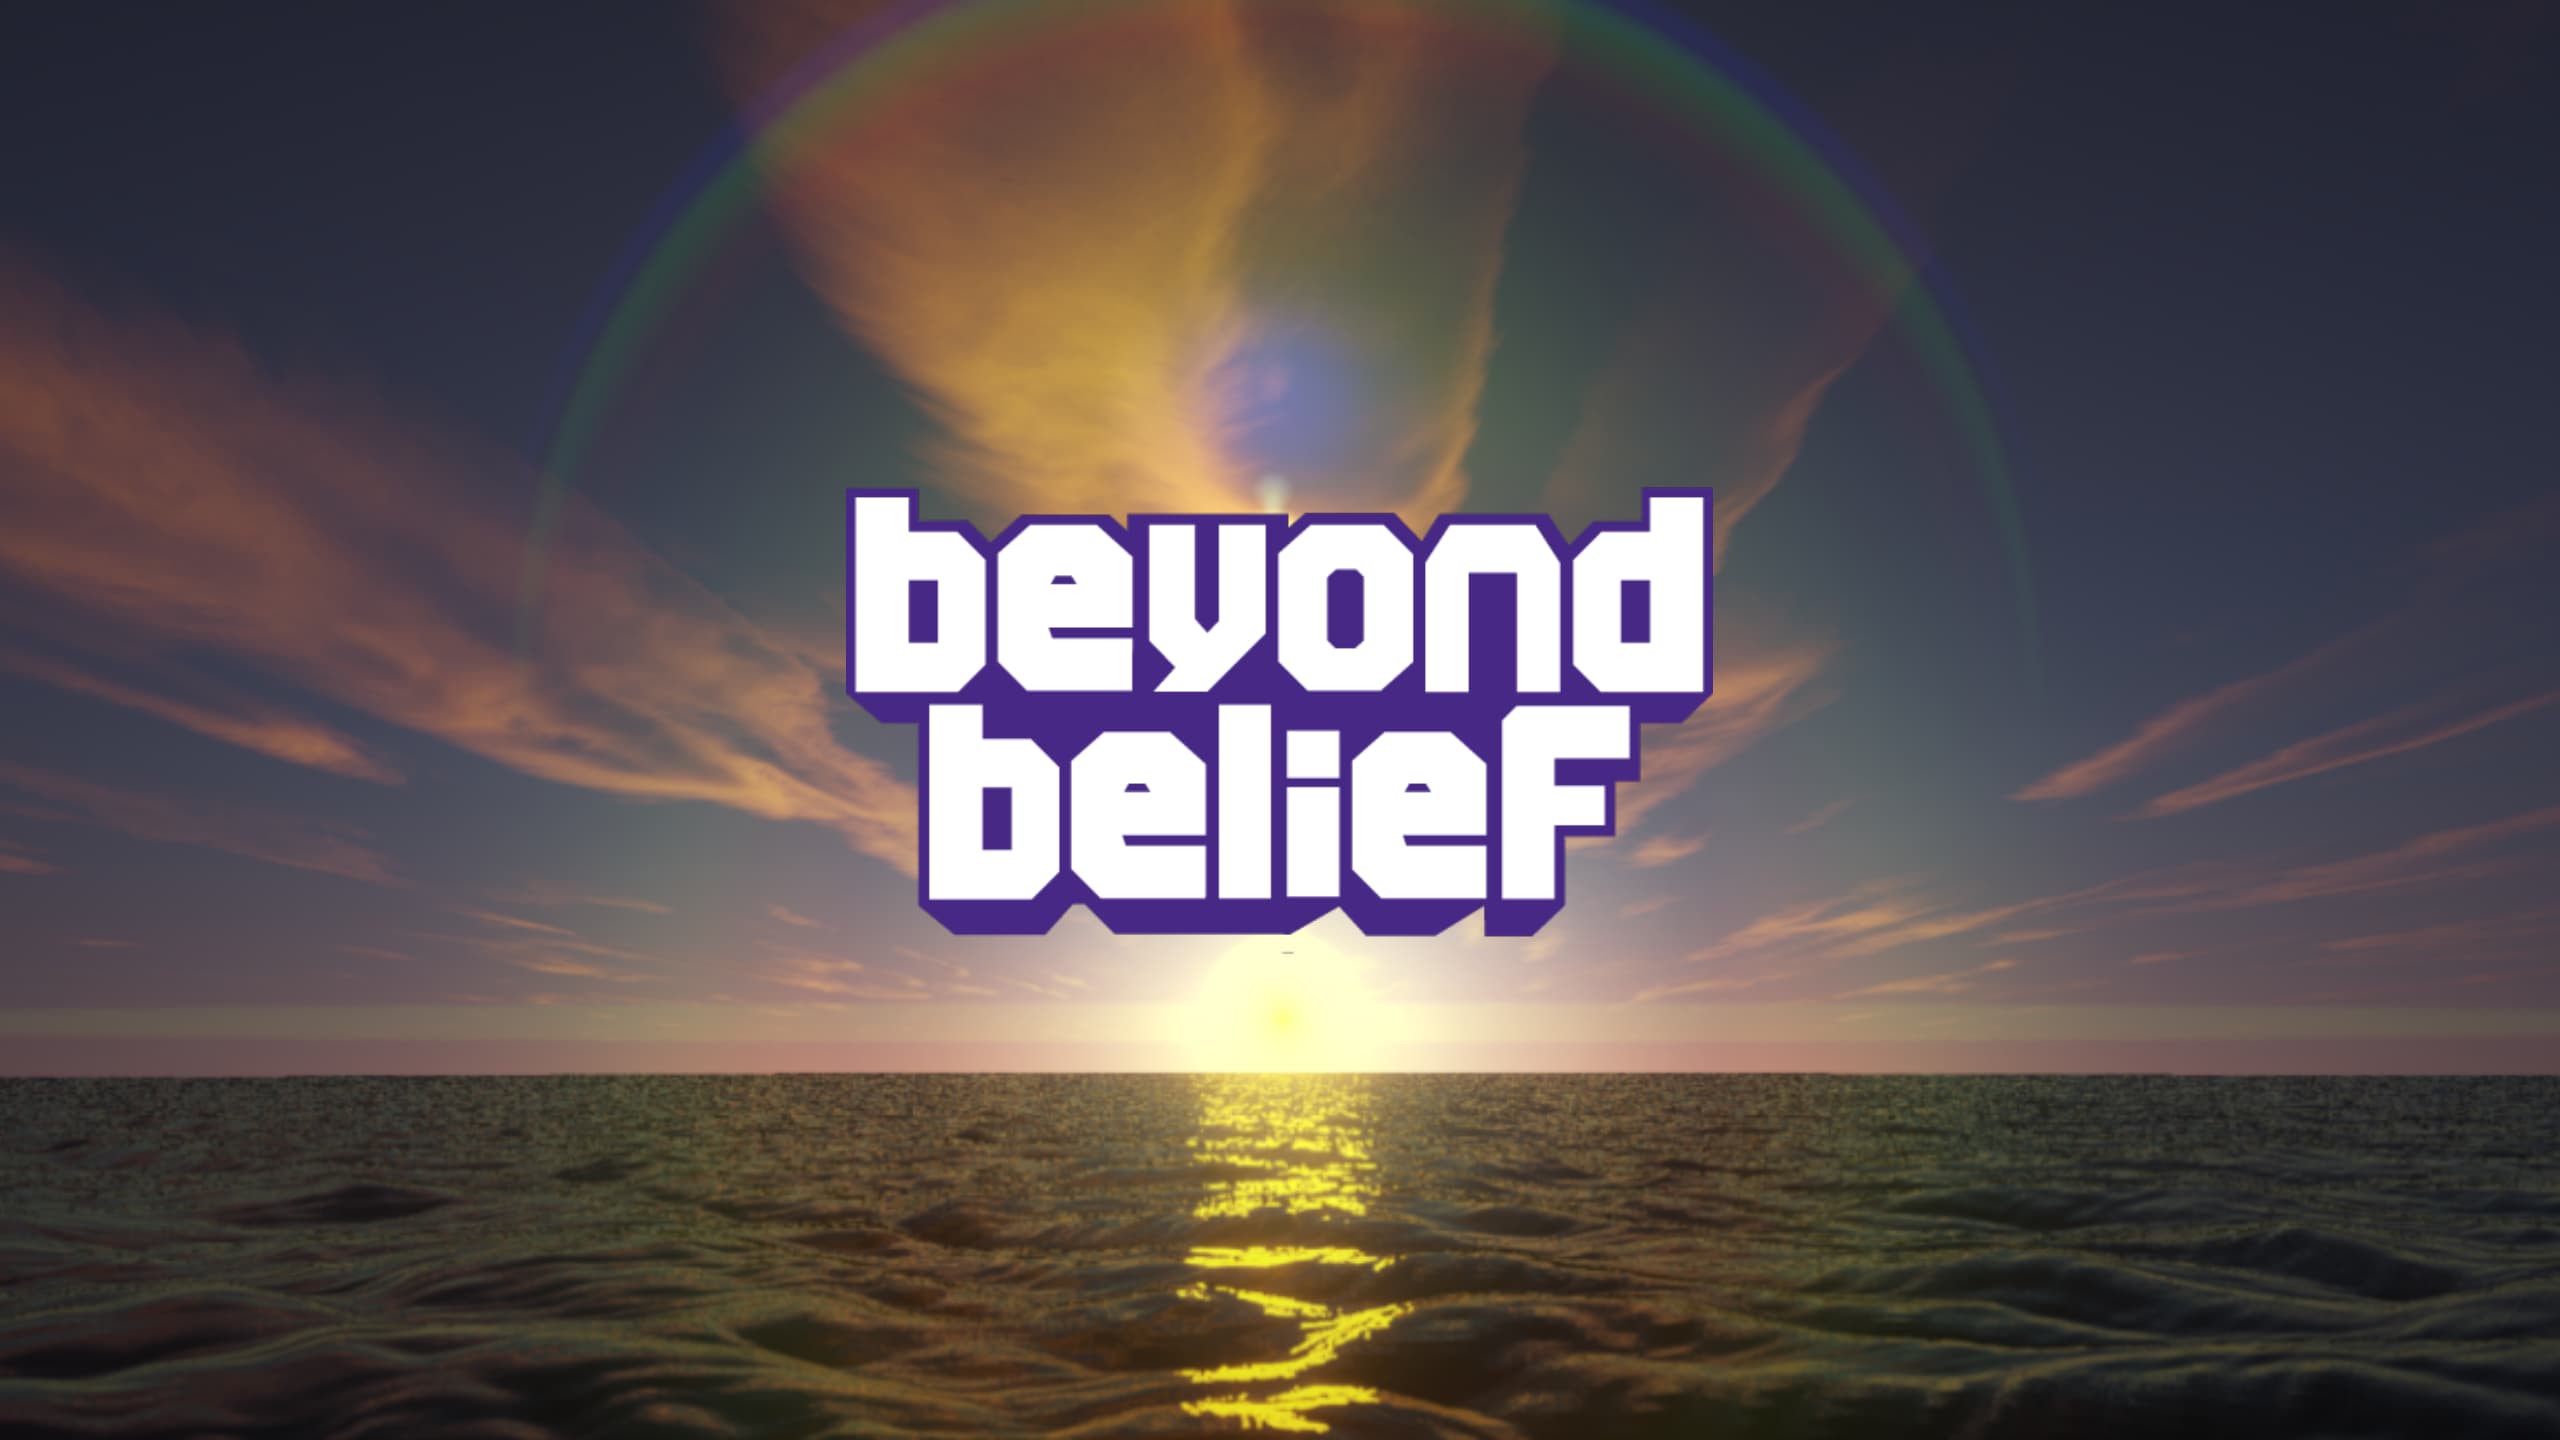 Beyond Belief Shaders